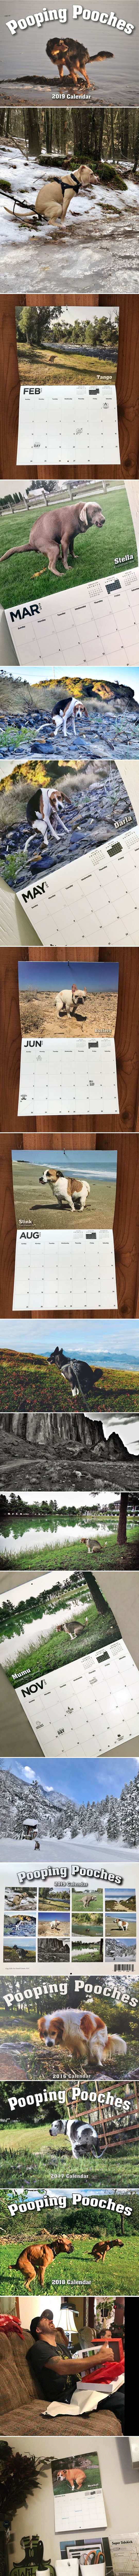 Jedna organizacija je napravila čudan kalendar za 2019. godinu, na slikama su psi koji u prirodi obavljaju nuždu